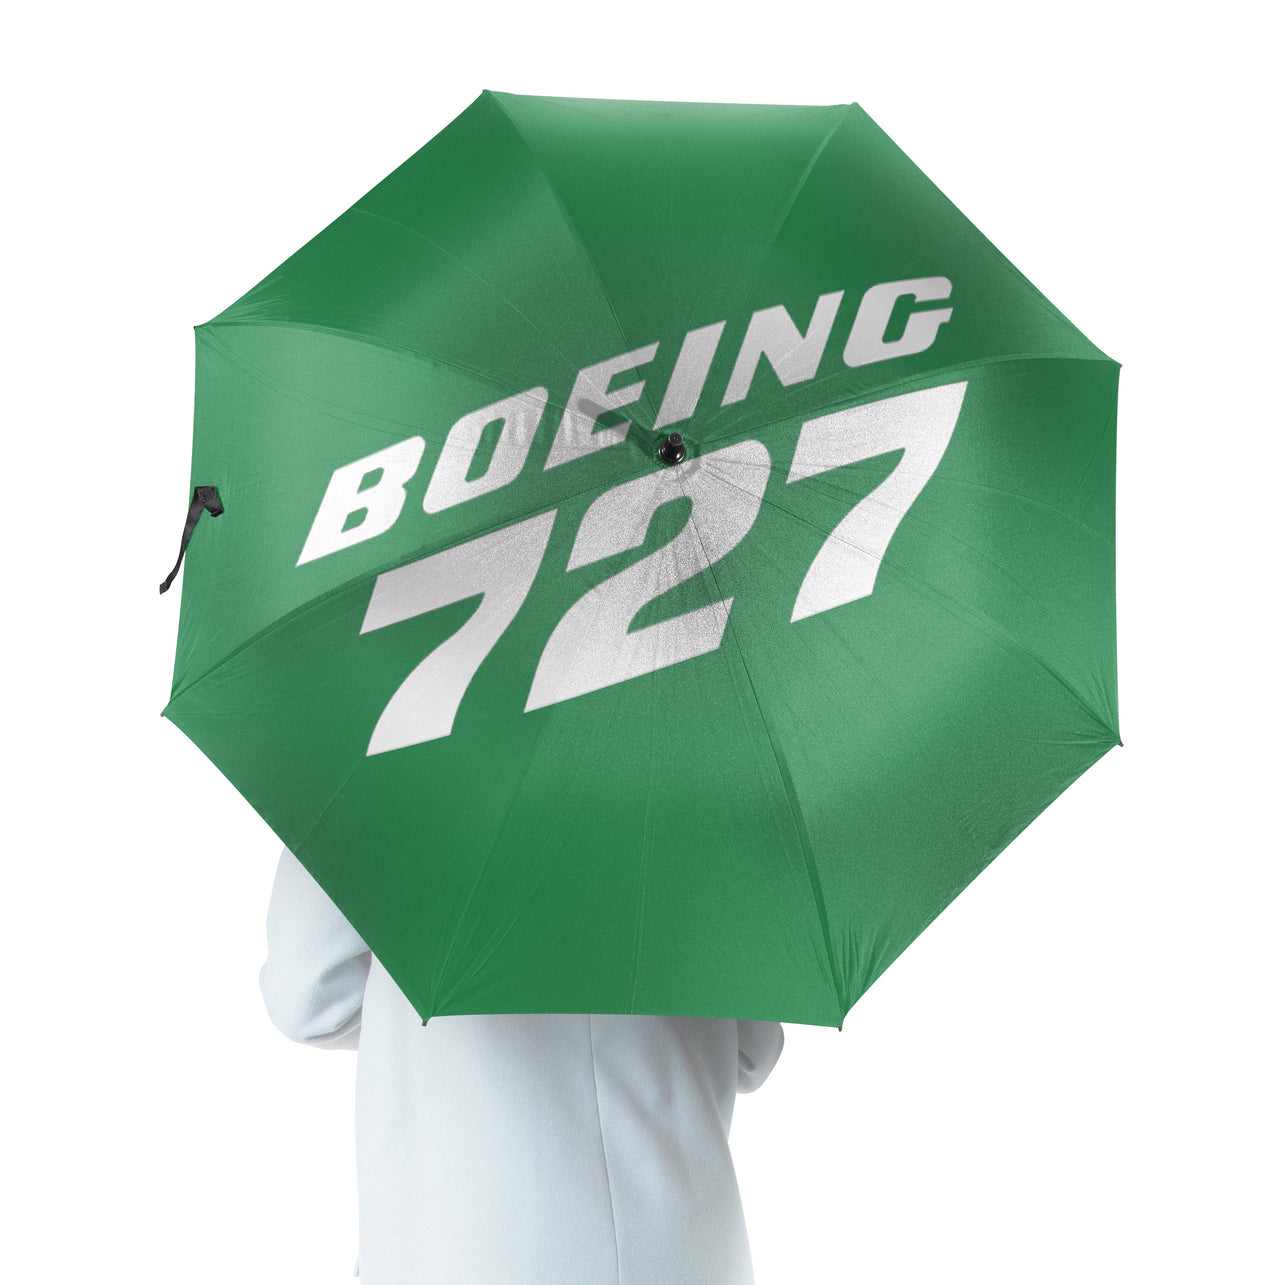 Boeing 727 & Text Designed Umbrella